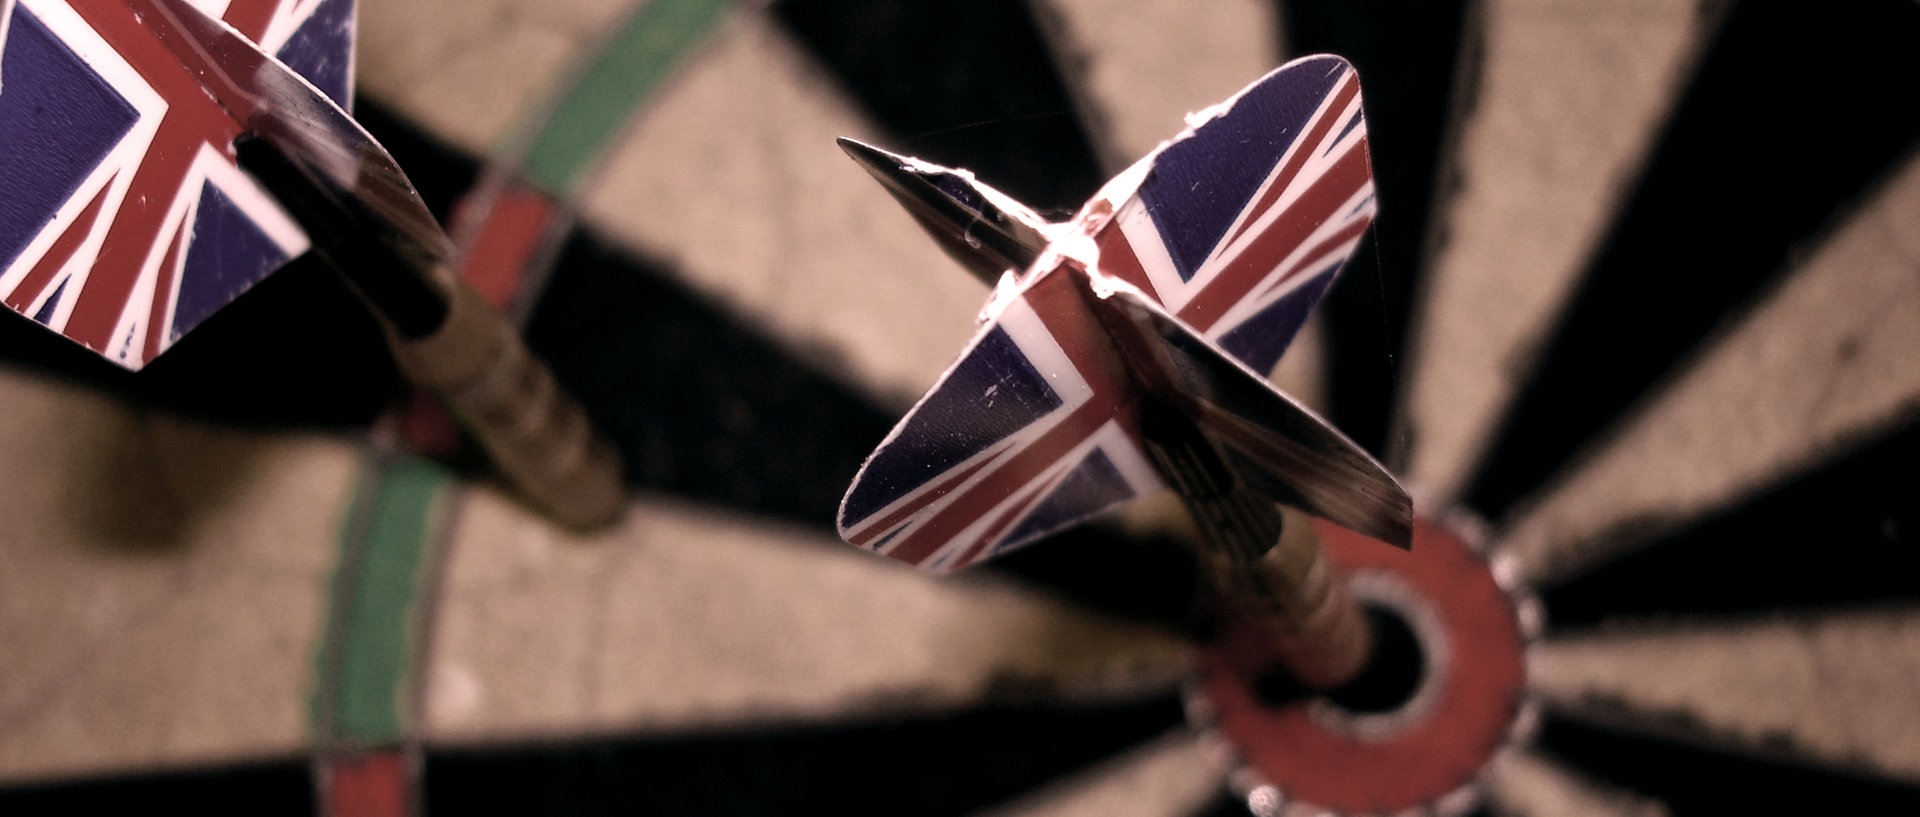 Zwei Dartpfeile mit der englischen Flagge als Flight stecken in einem Dartboard., © madochab / photocase.deFoto: madochab / photocase.de